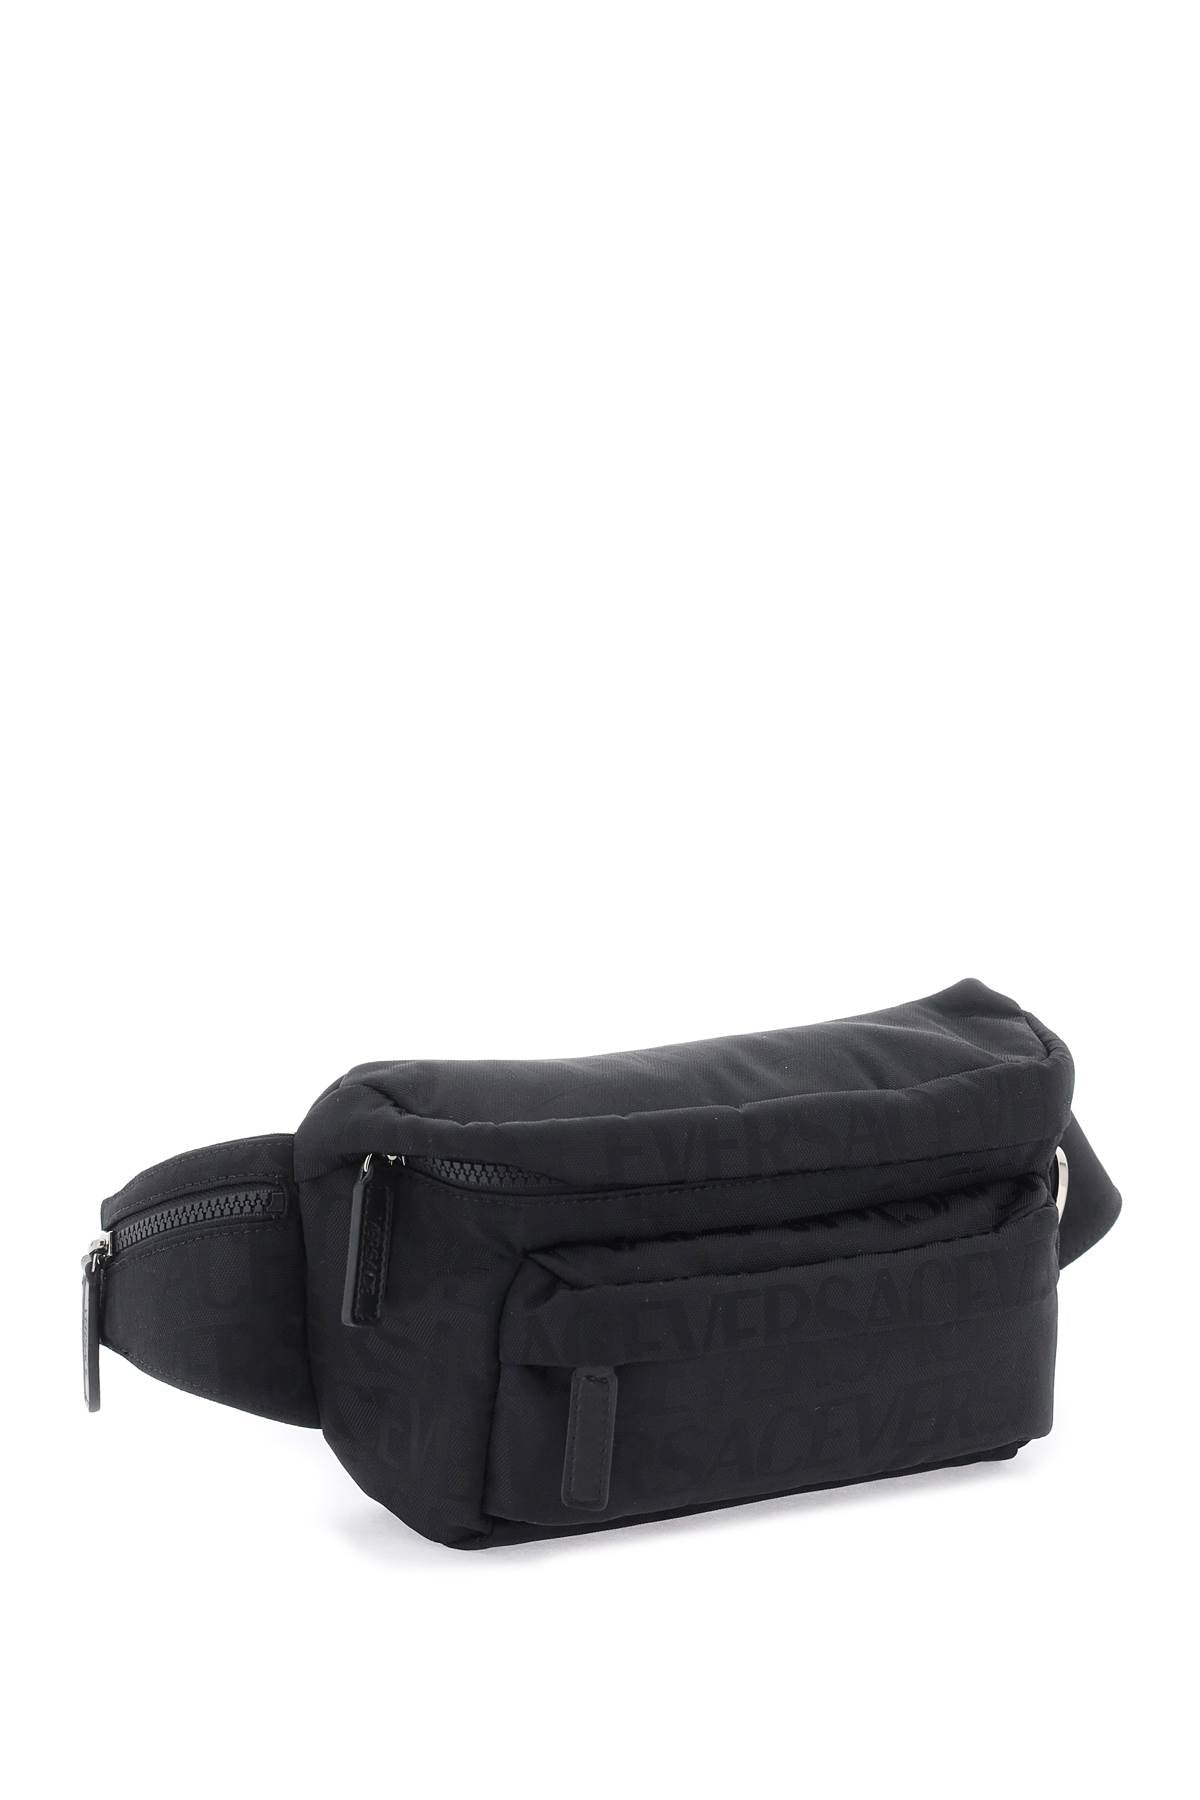 Versace neo nylon beltpack-2